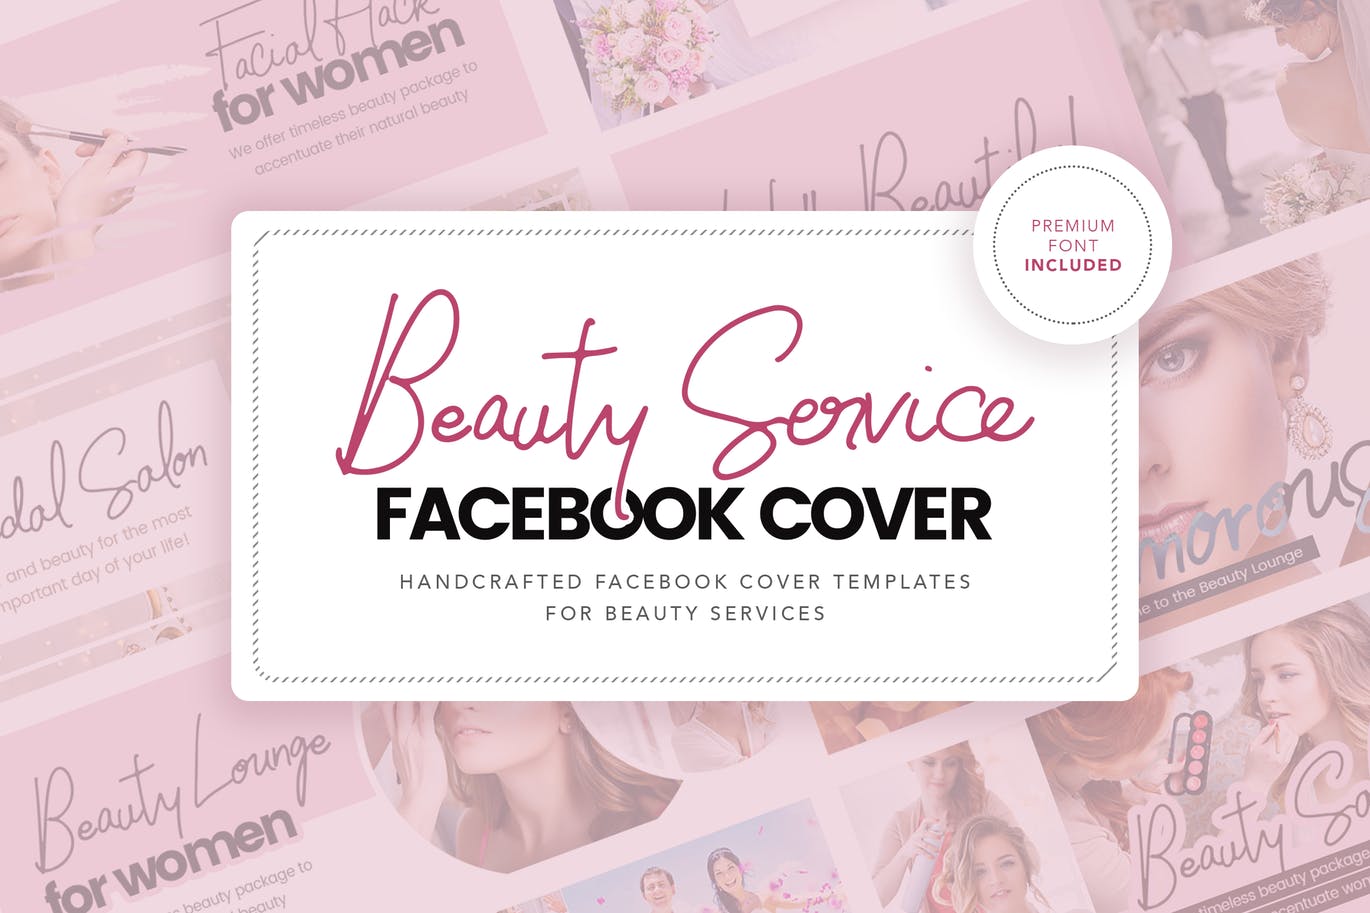 沙龙美容服务推广Facebook主页封面设计模板素材库精选 Salon & Beauty Service Facebook Cover Template插图